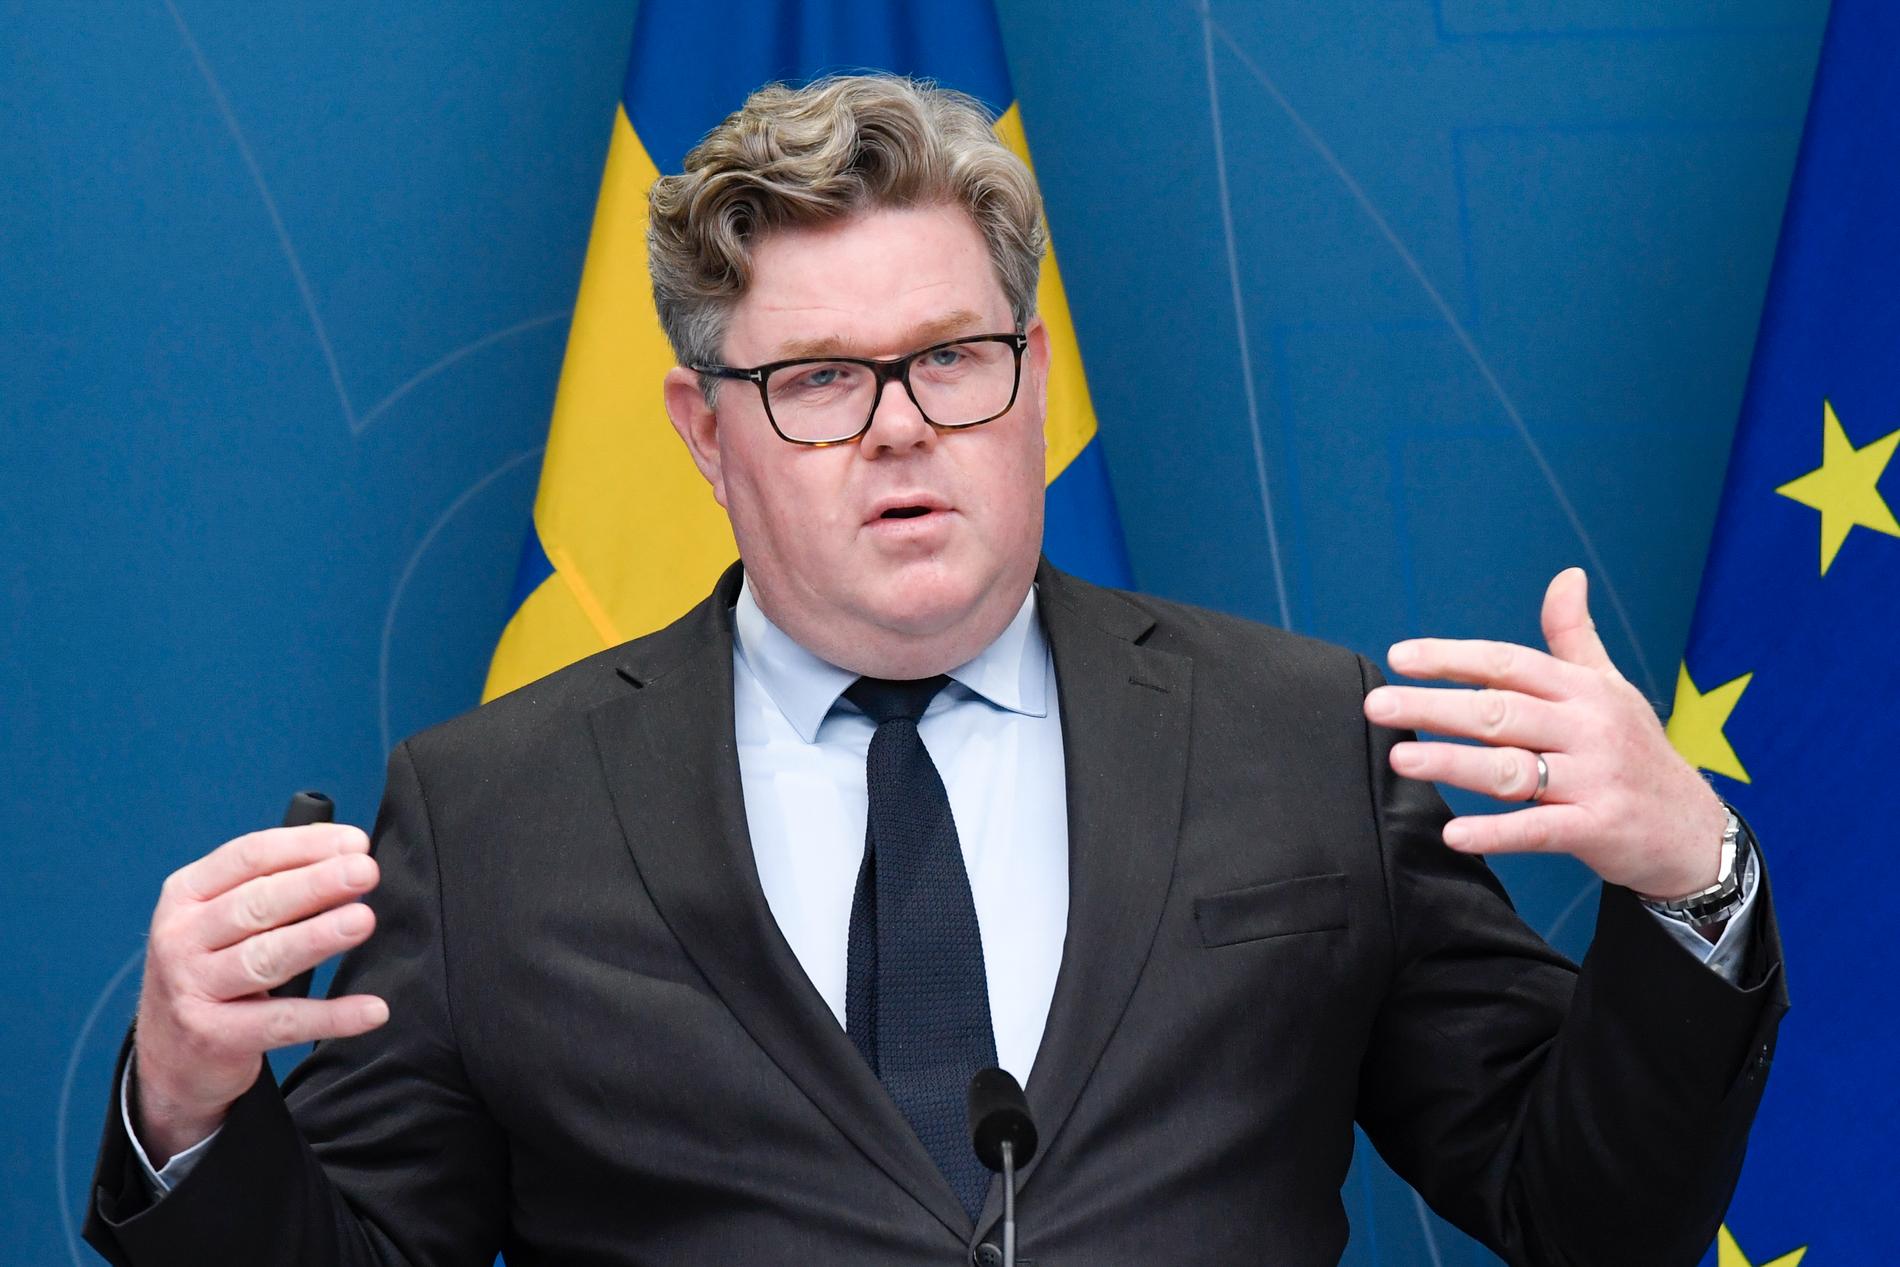 Polis ska utan konkreta brottsmisstankar kunna avlyssna för att förhindra att skjutningar och sprängningar sker, enligt justitieminister Gunnar Strömmer (M).